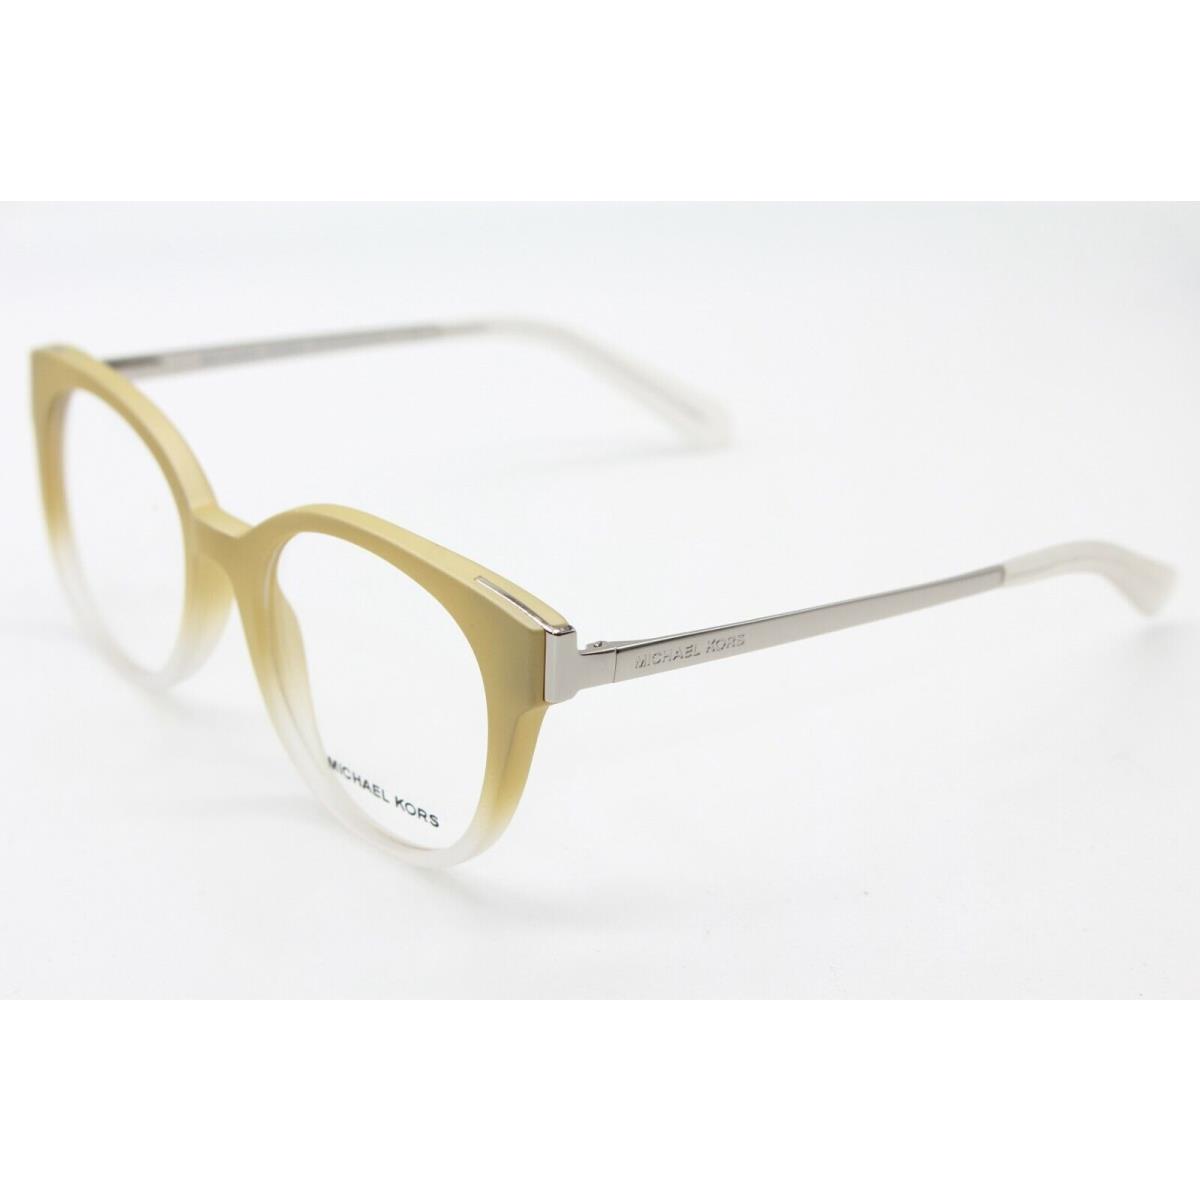 Michael Kors MK 8010 3038 Beige Eyeglasses Frame MK8010 50-18